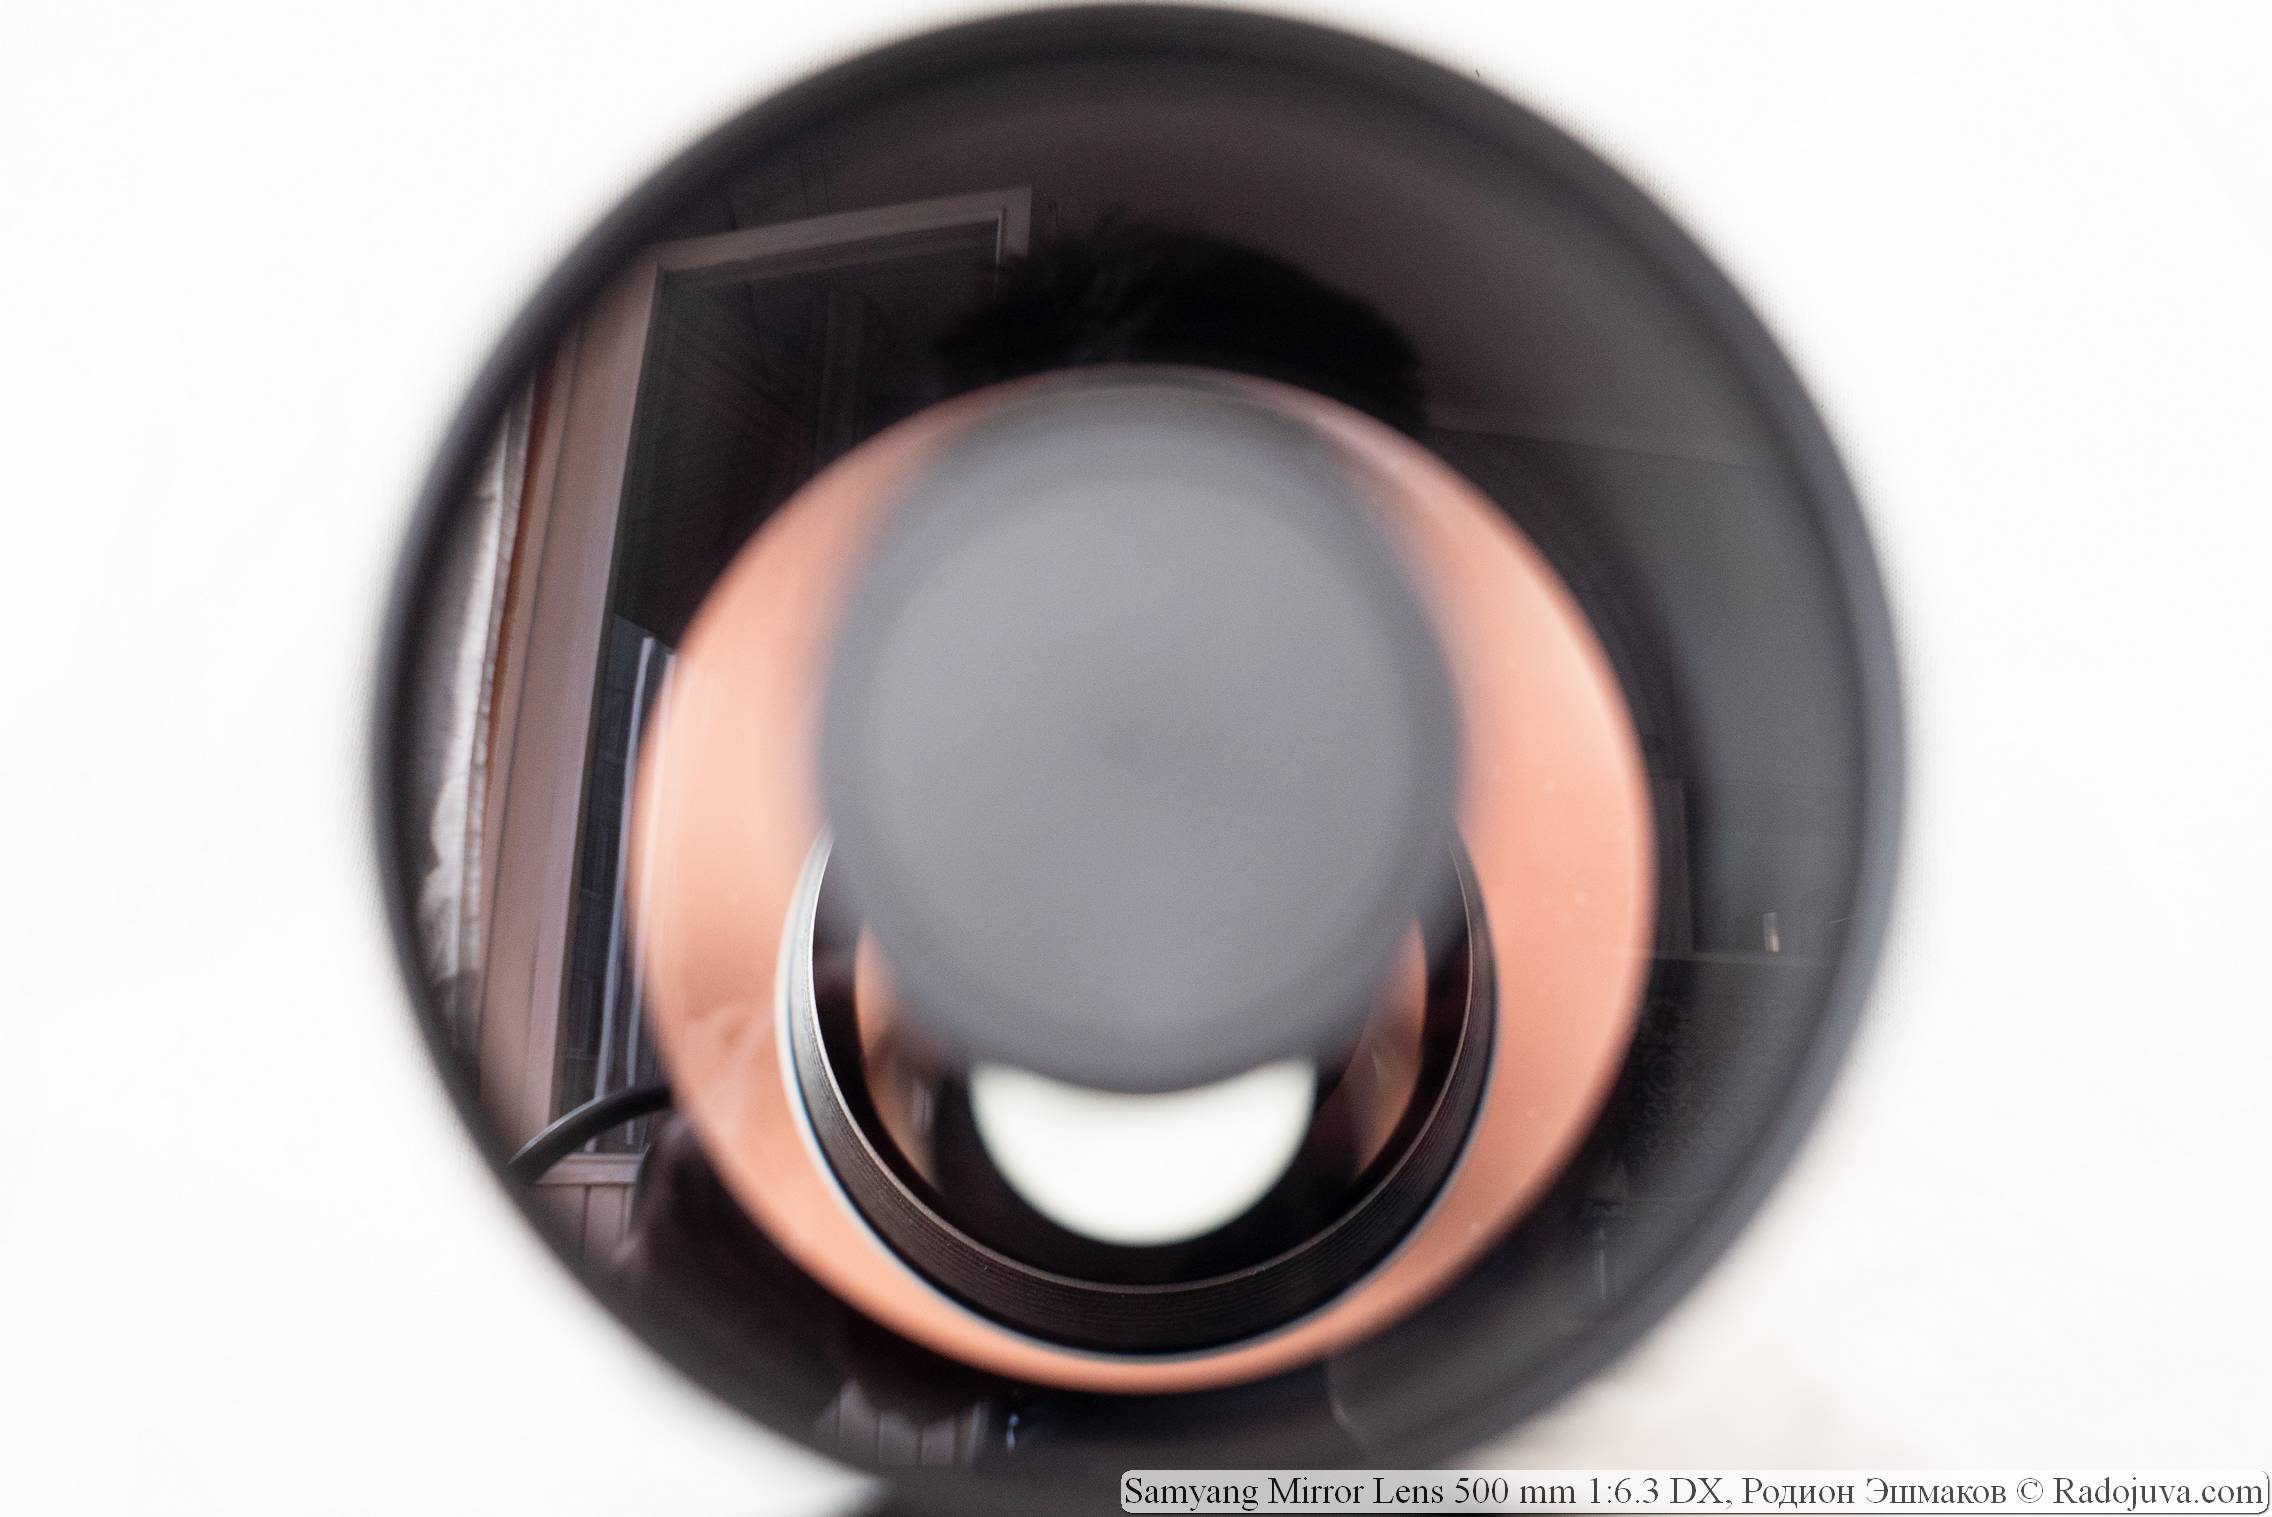 Vista de la apertura de zanahoria de la lente Samyang 500/6.3 a través de la lente frontal.